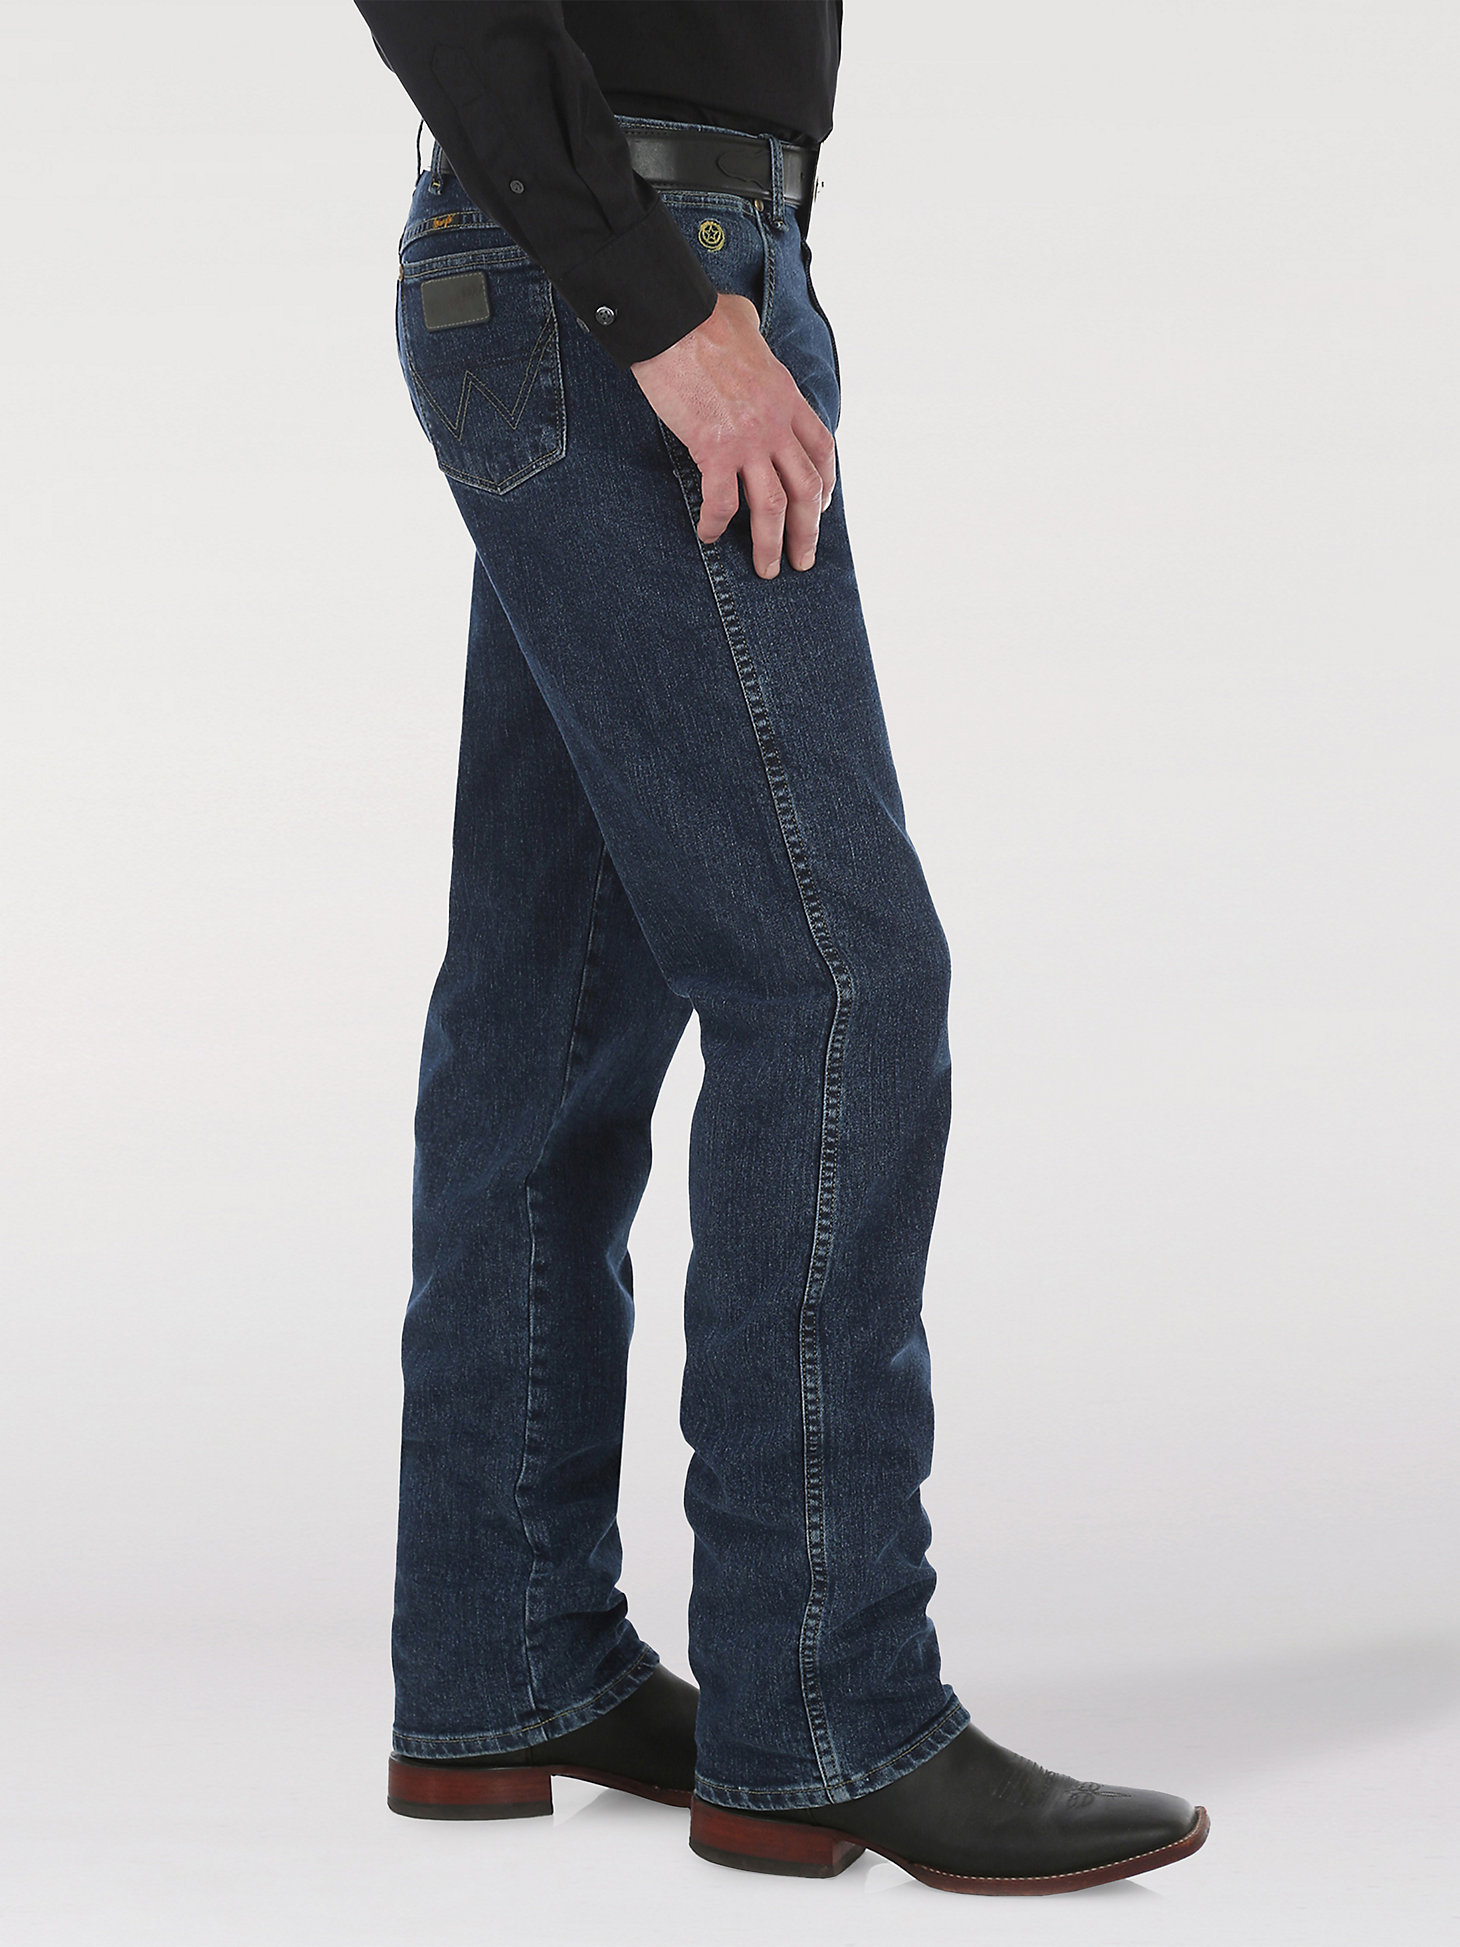 George Strait Cowboy Cut® Regular Fit Jean in Dark Amarillo alternative view 1